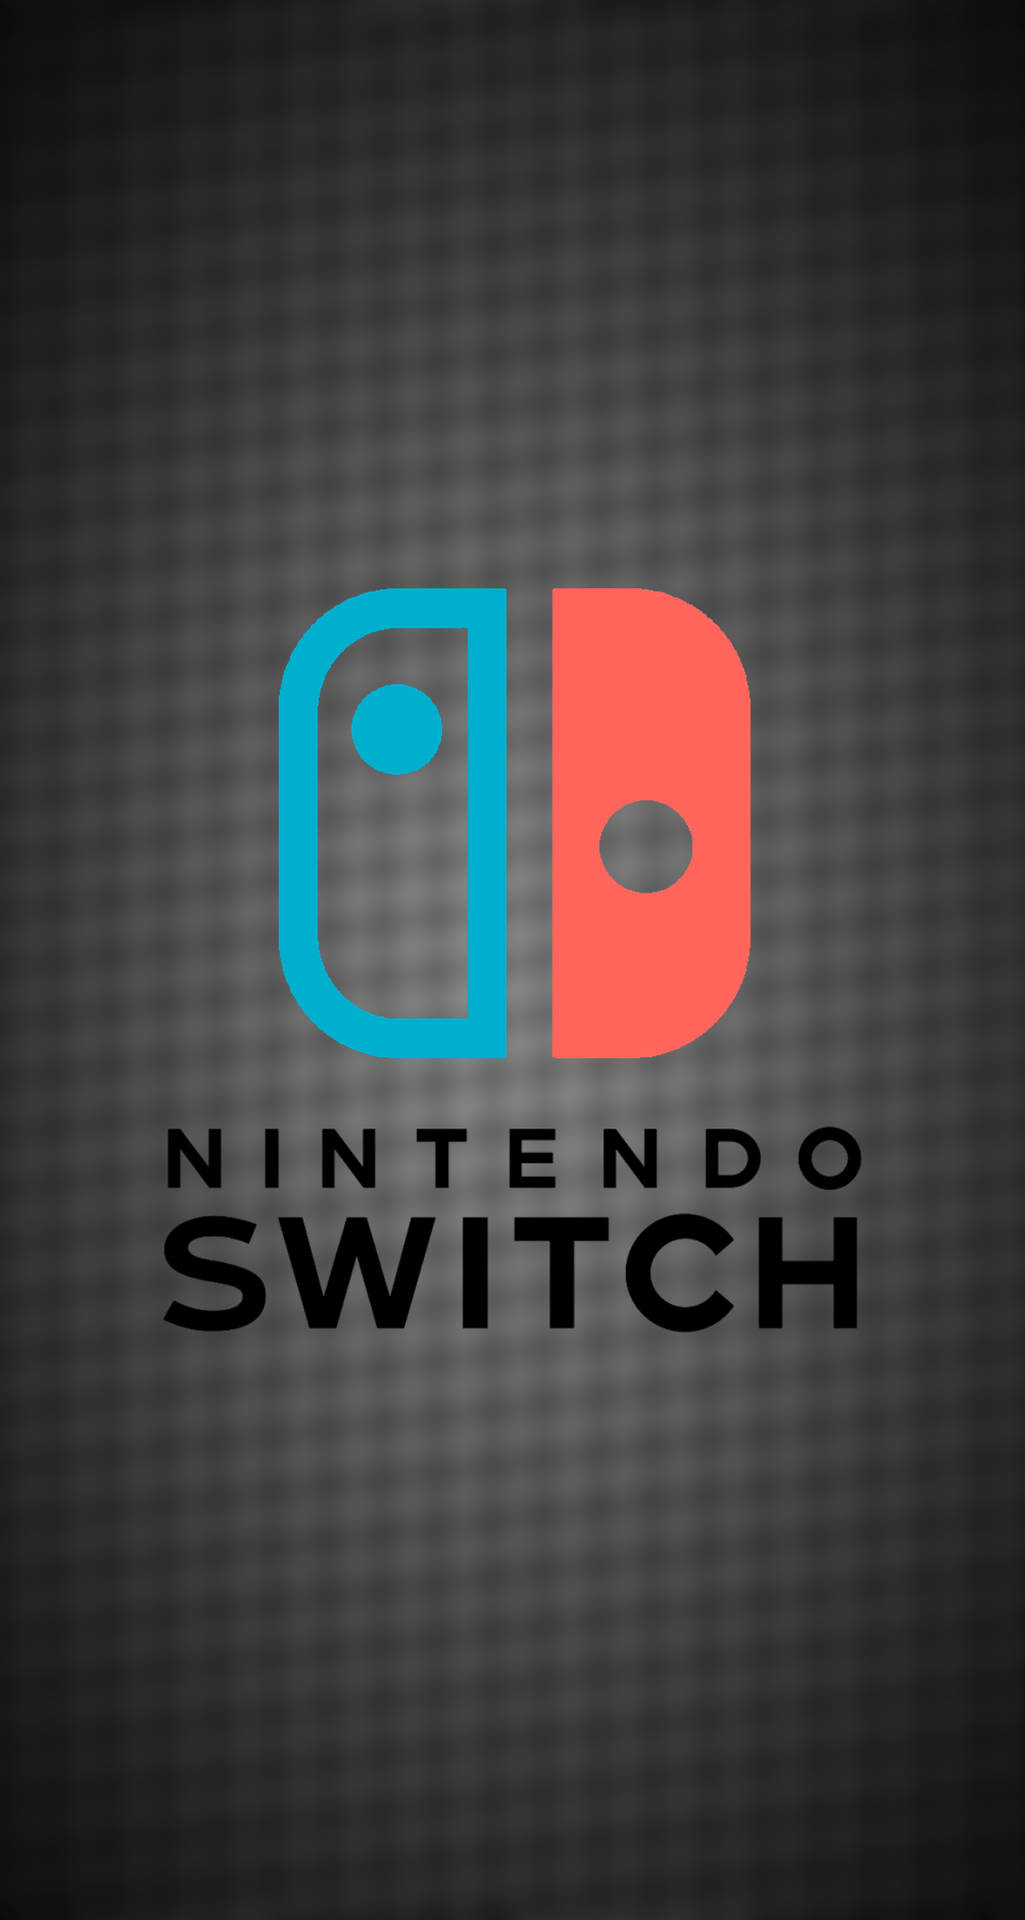 Logotiponintendo Switch Vermelho Azul. Papel de Parede